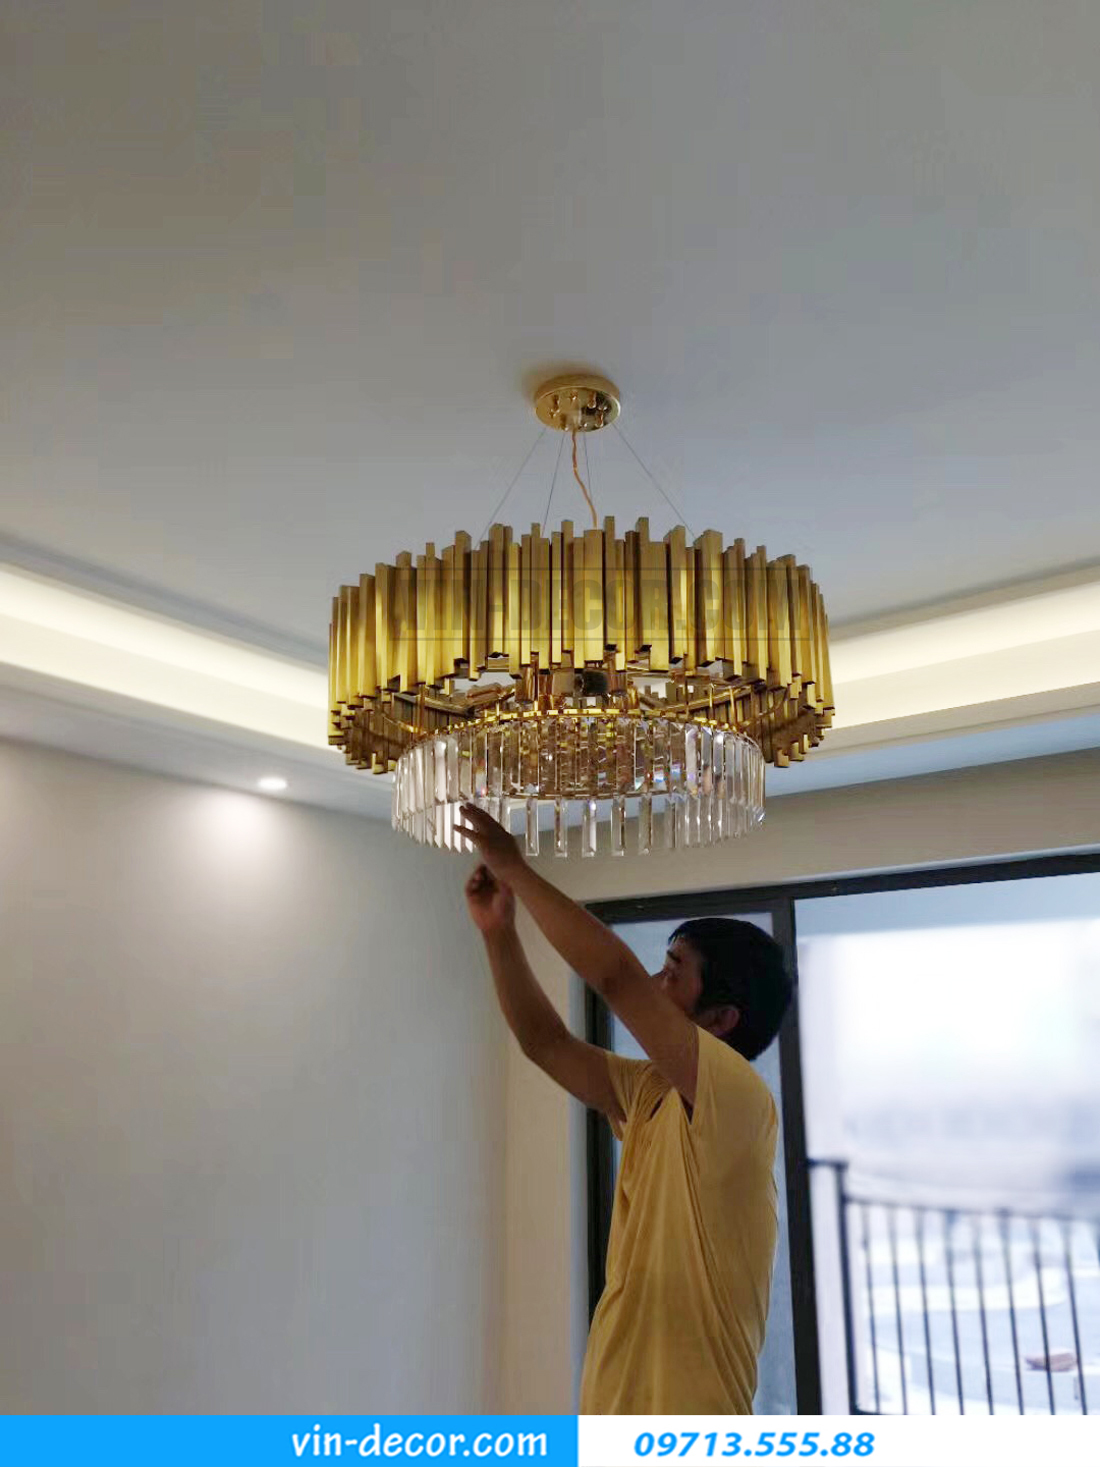 tư vấn lắp đặt chọn lựa đèn trang trí nội thất cho chung cư hiện đại 04